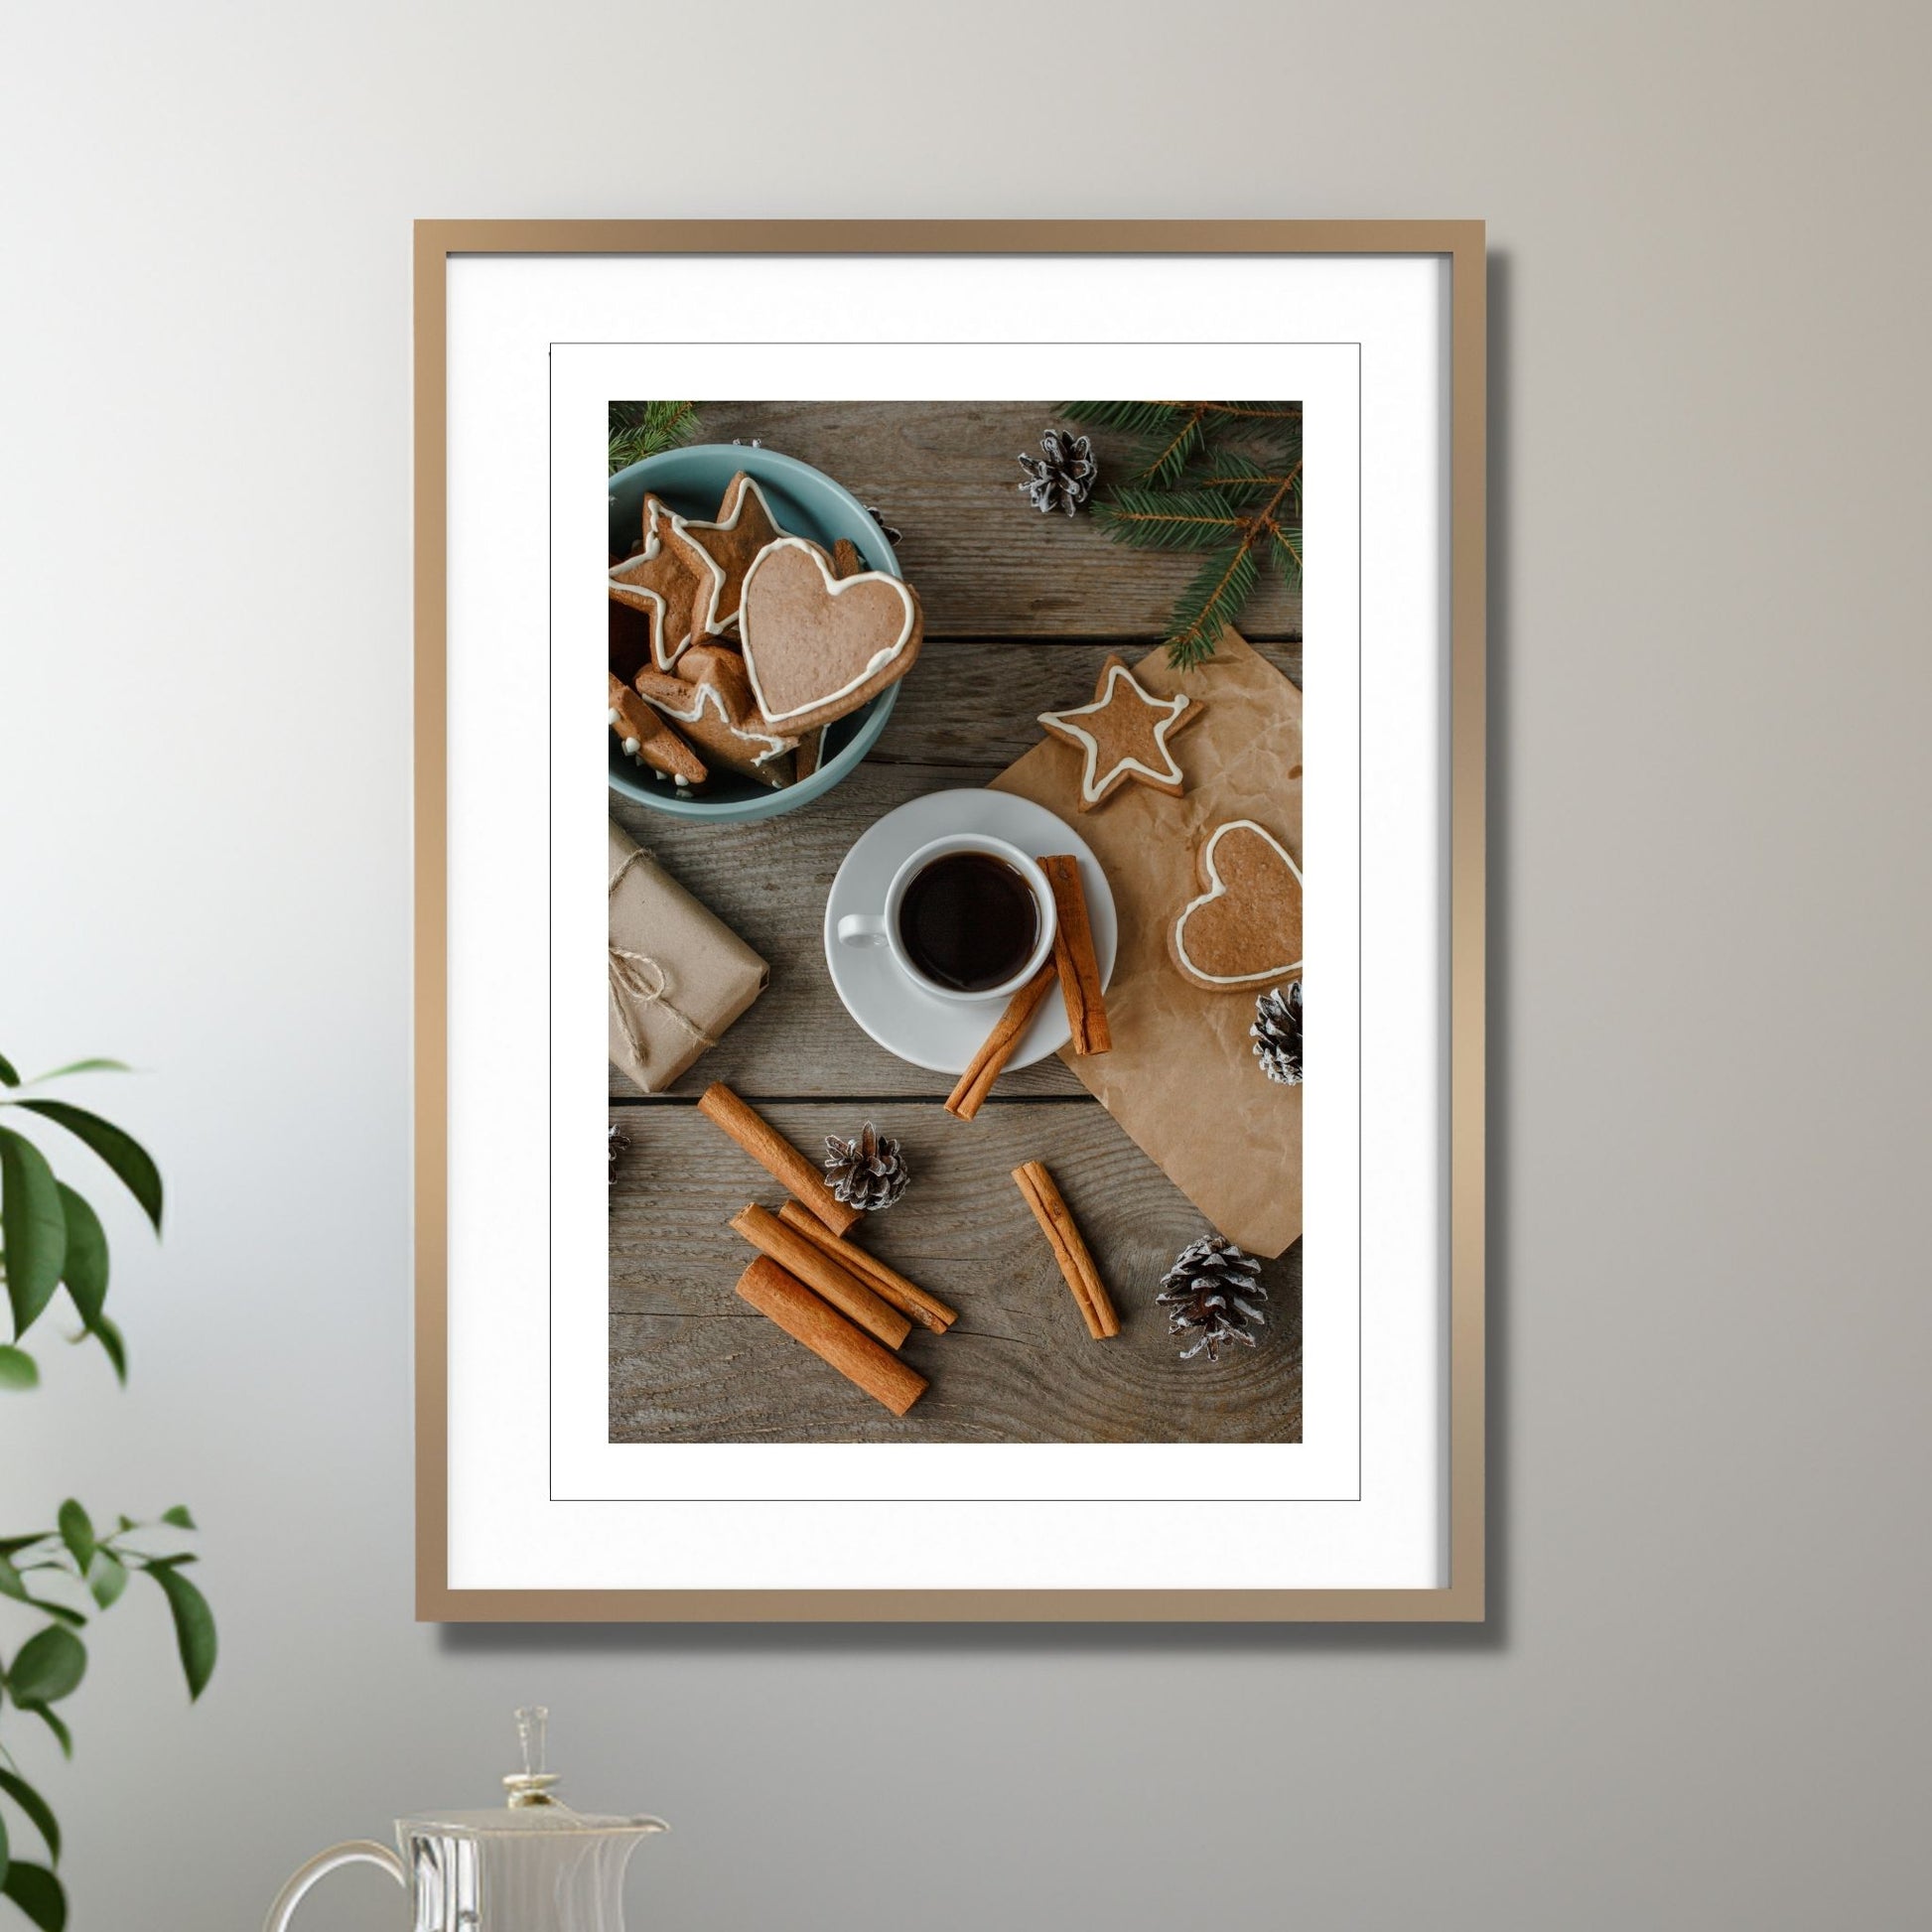 Plakat med dekorativt førjulsmotiv, av en kaffekopp og pepperkaker. Illustrasjonen viser plakaten i eikeramme med passepatout som henger på en vegg.